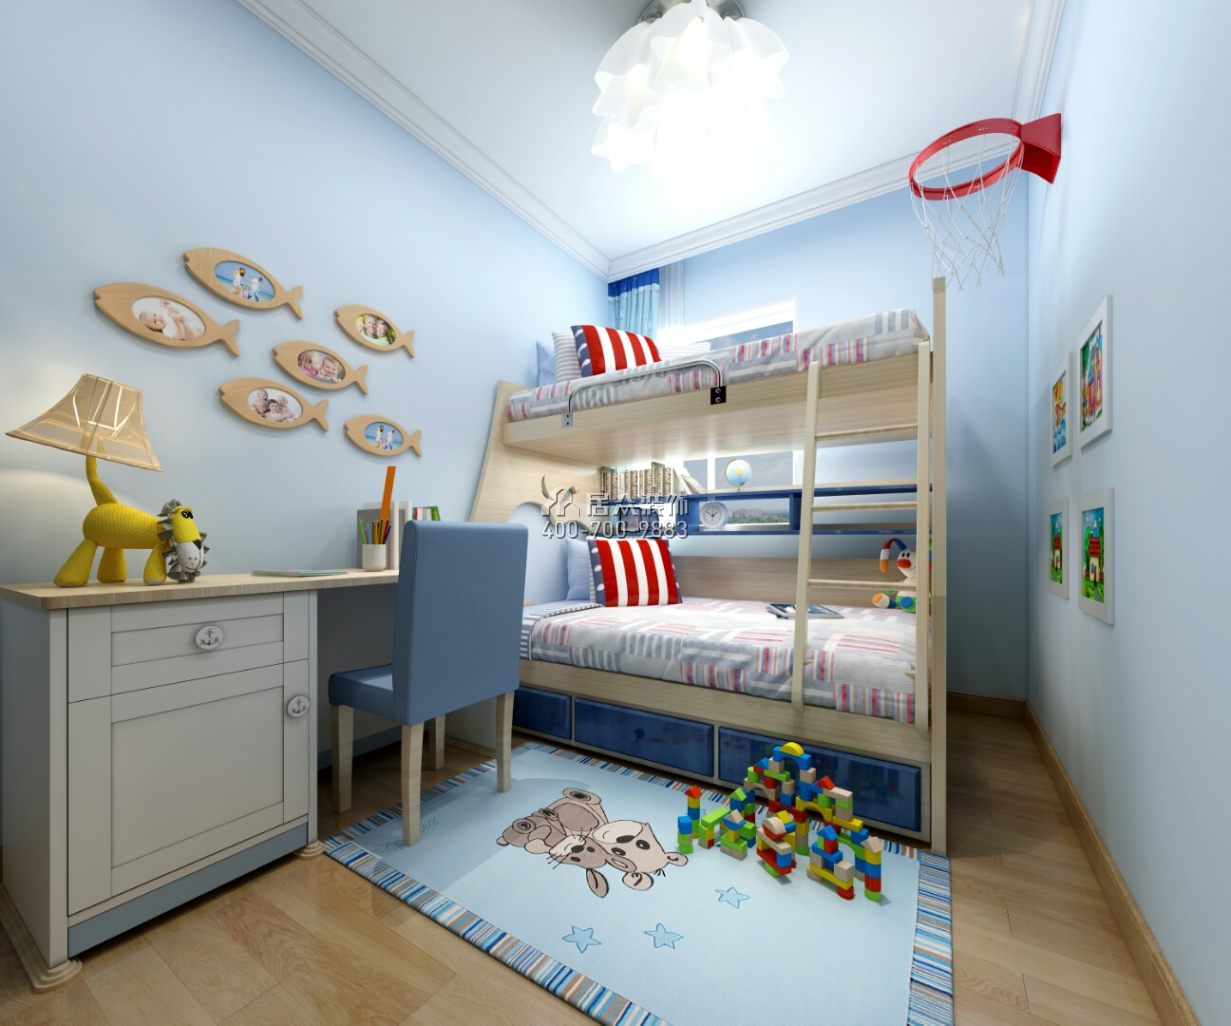 香山美树苑100平方米现代简约风格平层户型儿童房装修效果图